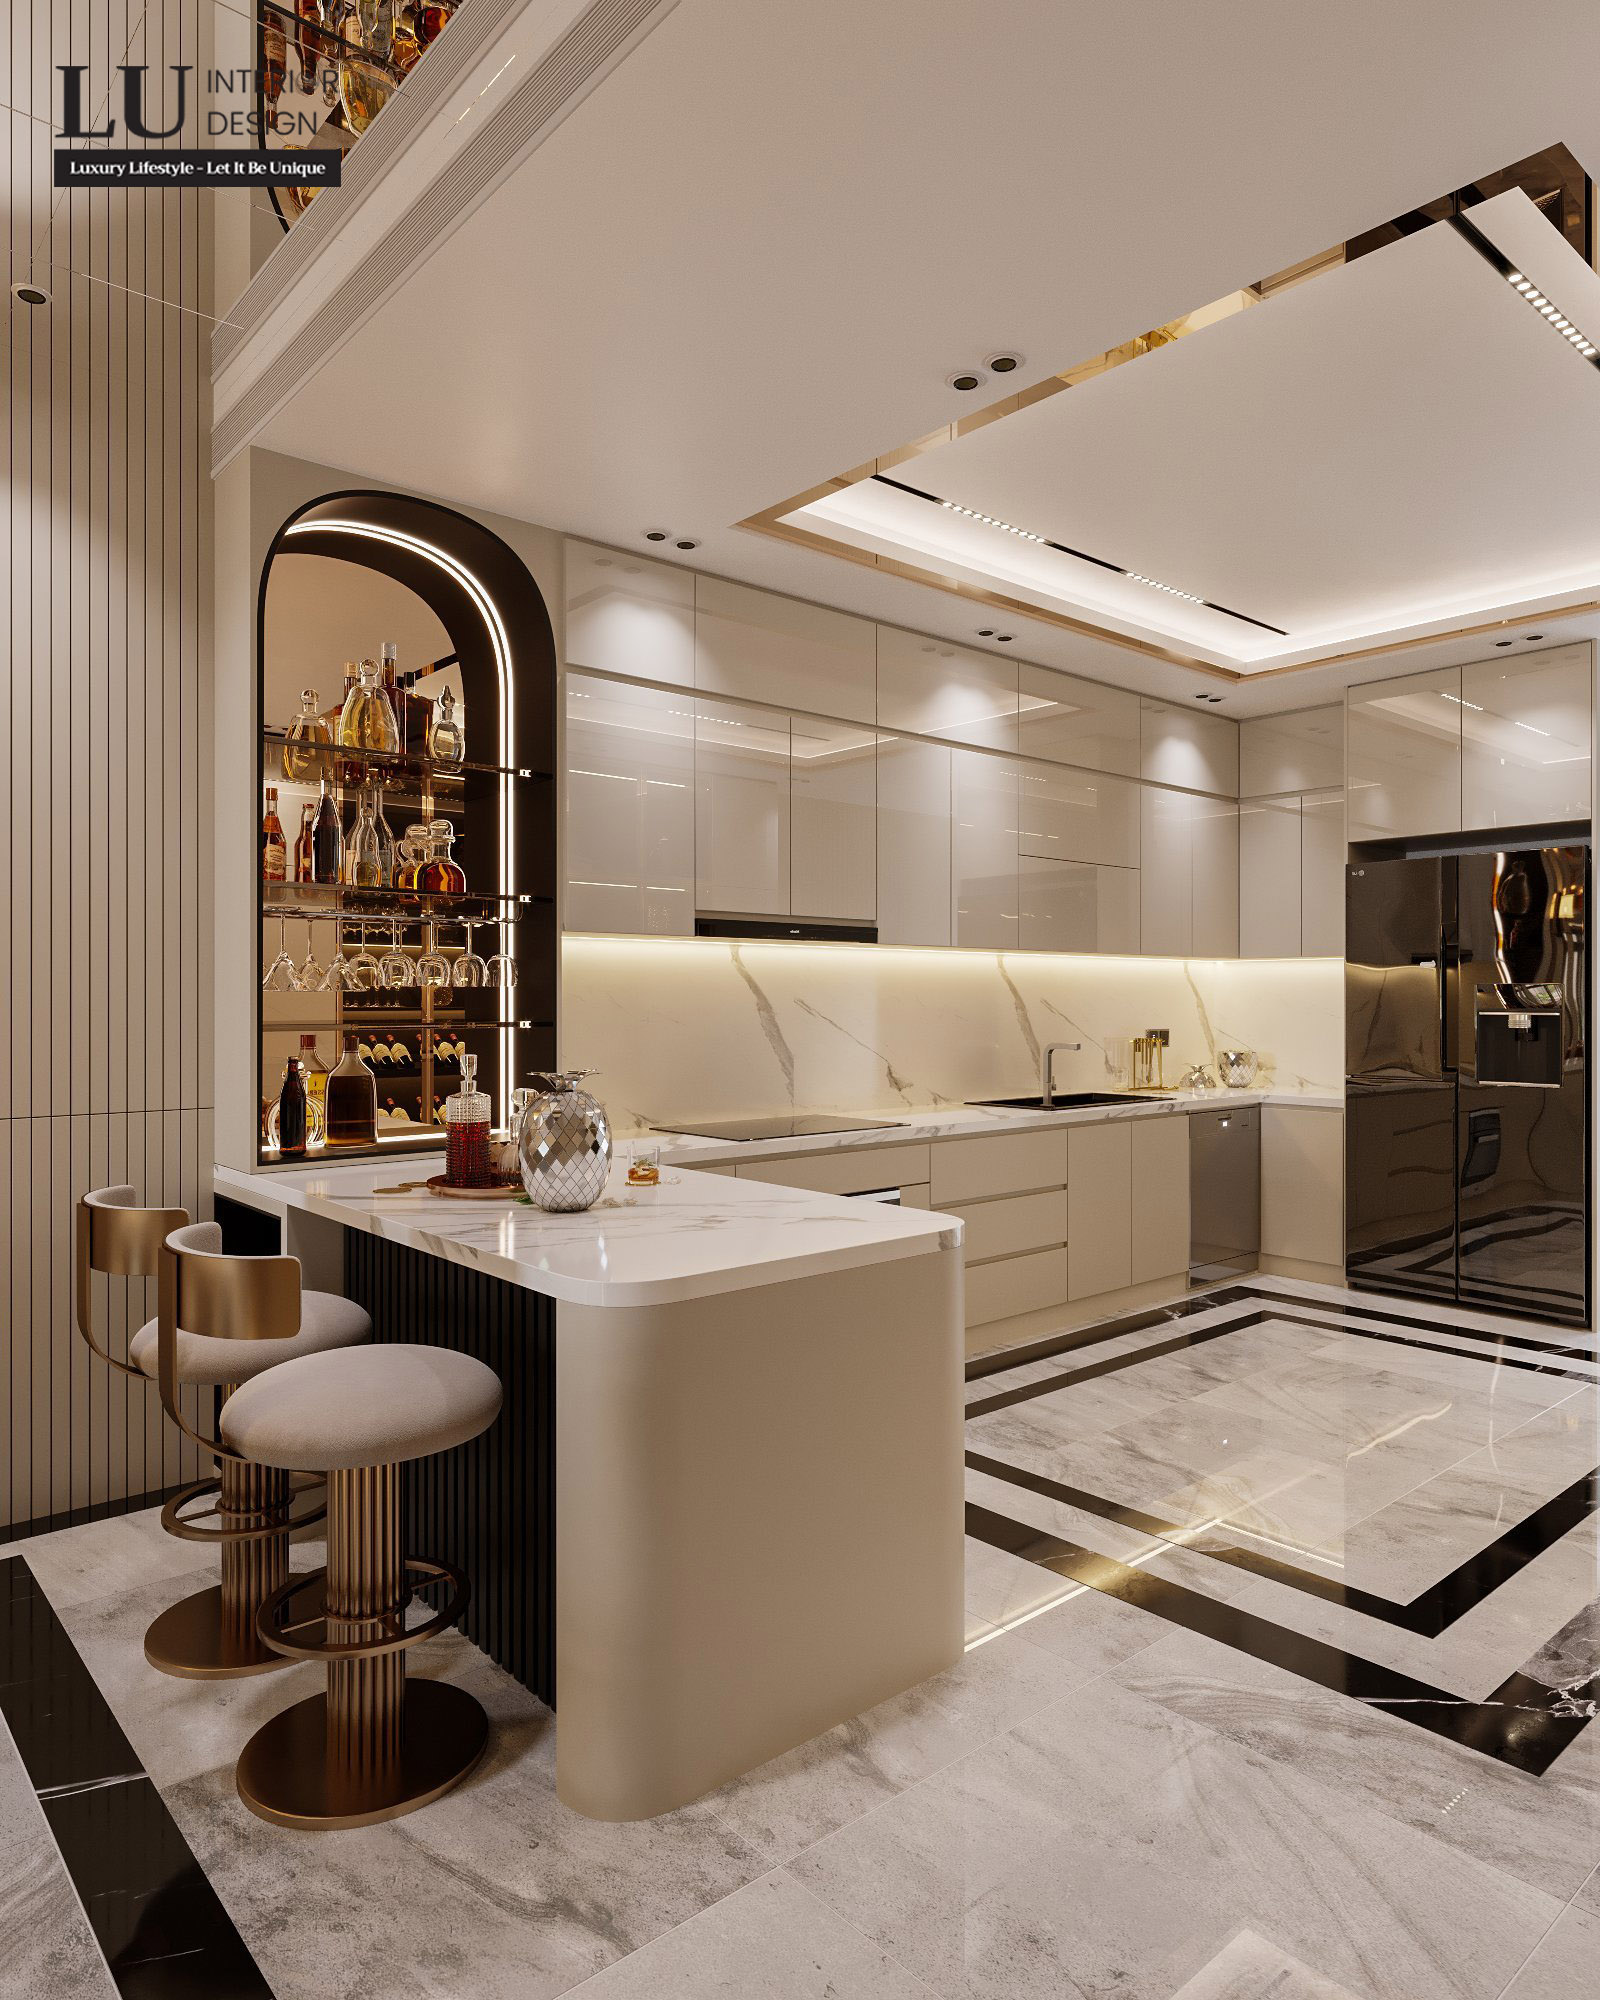 Tủ lạnh, bồn rửa, bếp nấu được bài trí theo quy tắc tam giác | Dự nhà phố Tân Phú - LU Design.